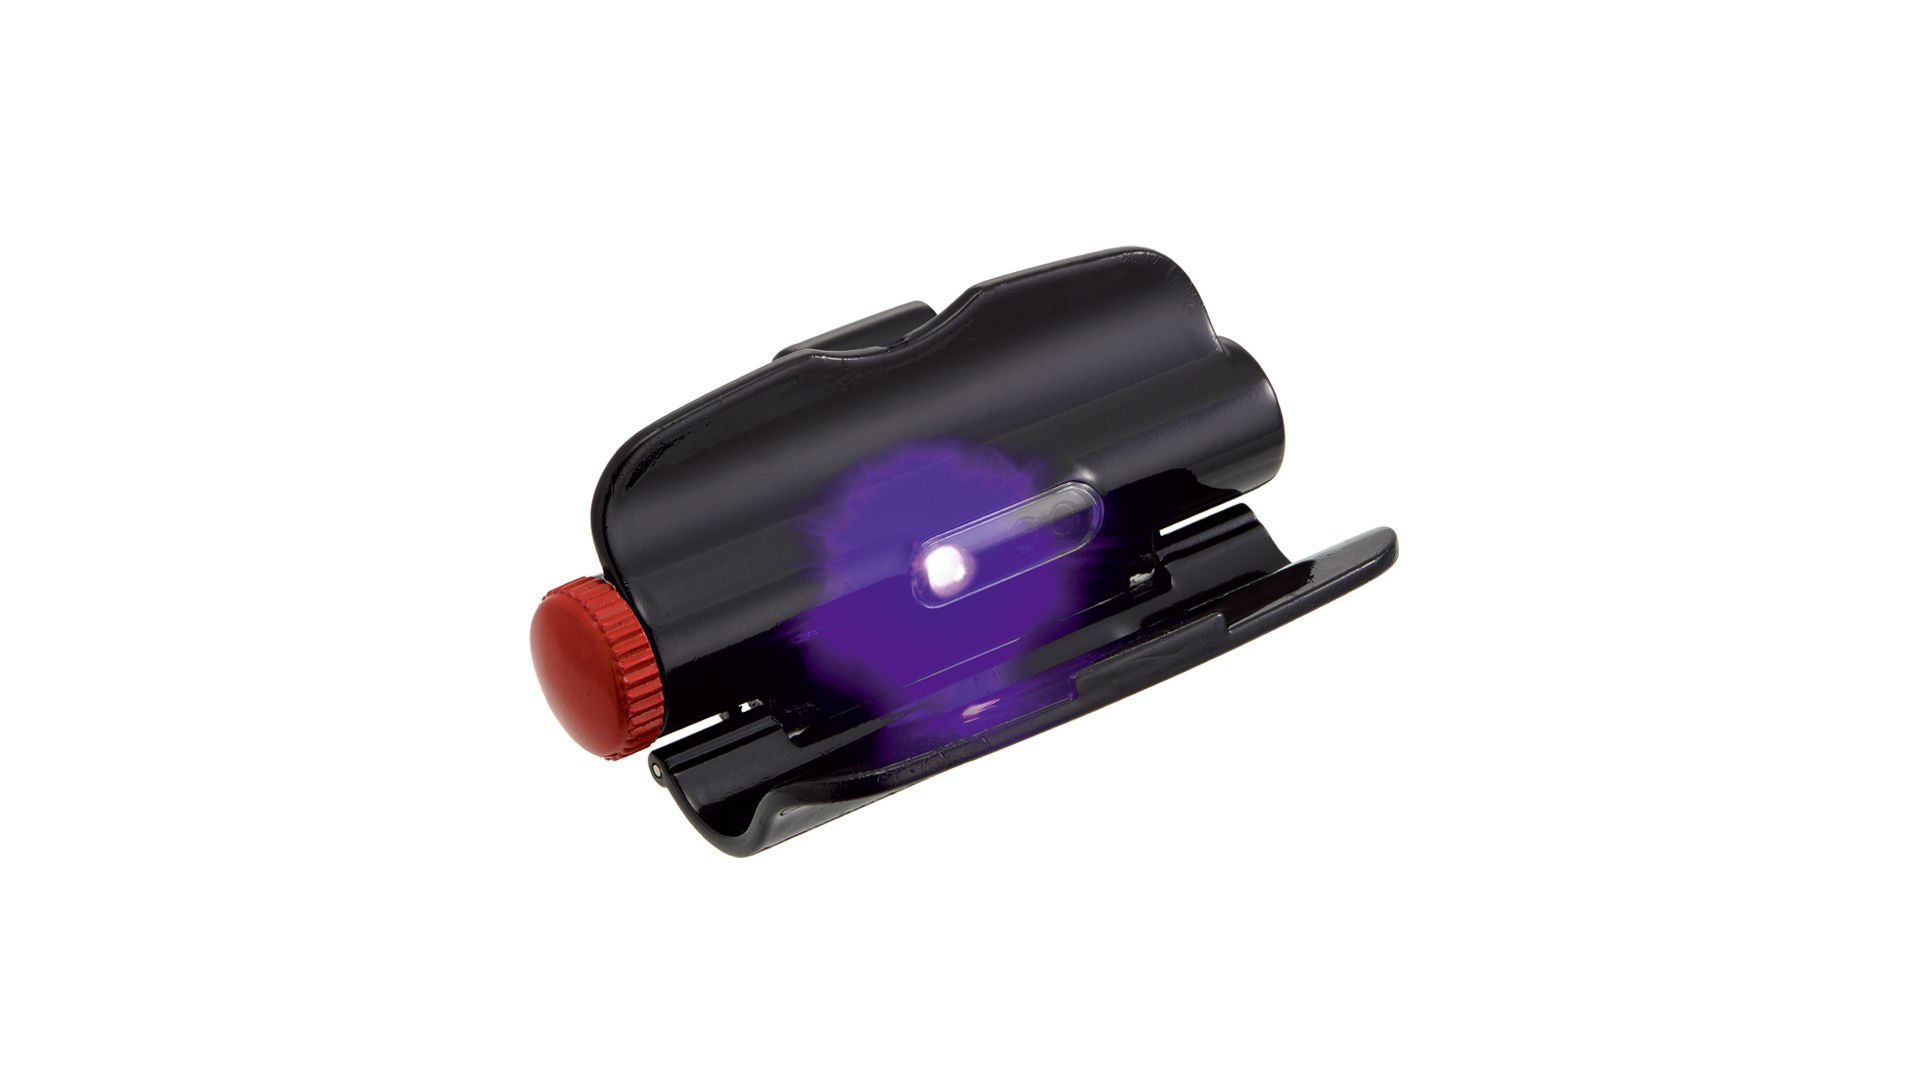 Hapyson Wearable  UV Light Akümülatör Taşınabilir Kalamar Zokası Işık Aparatı